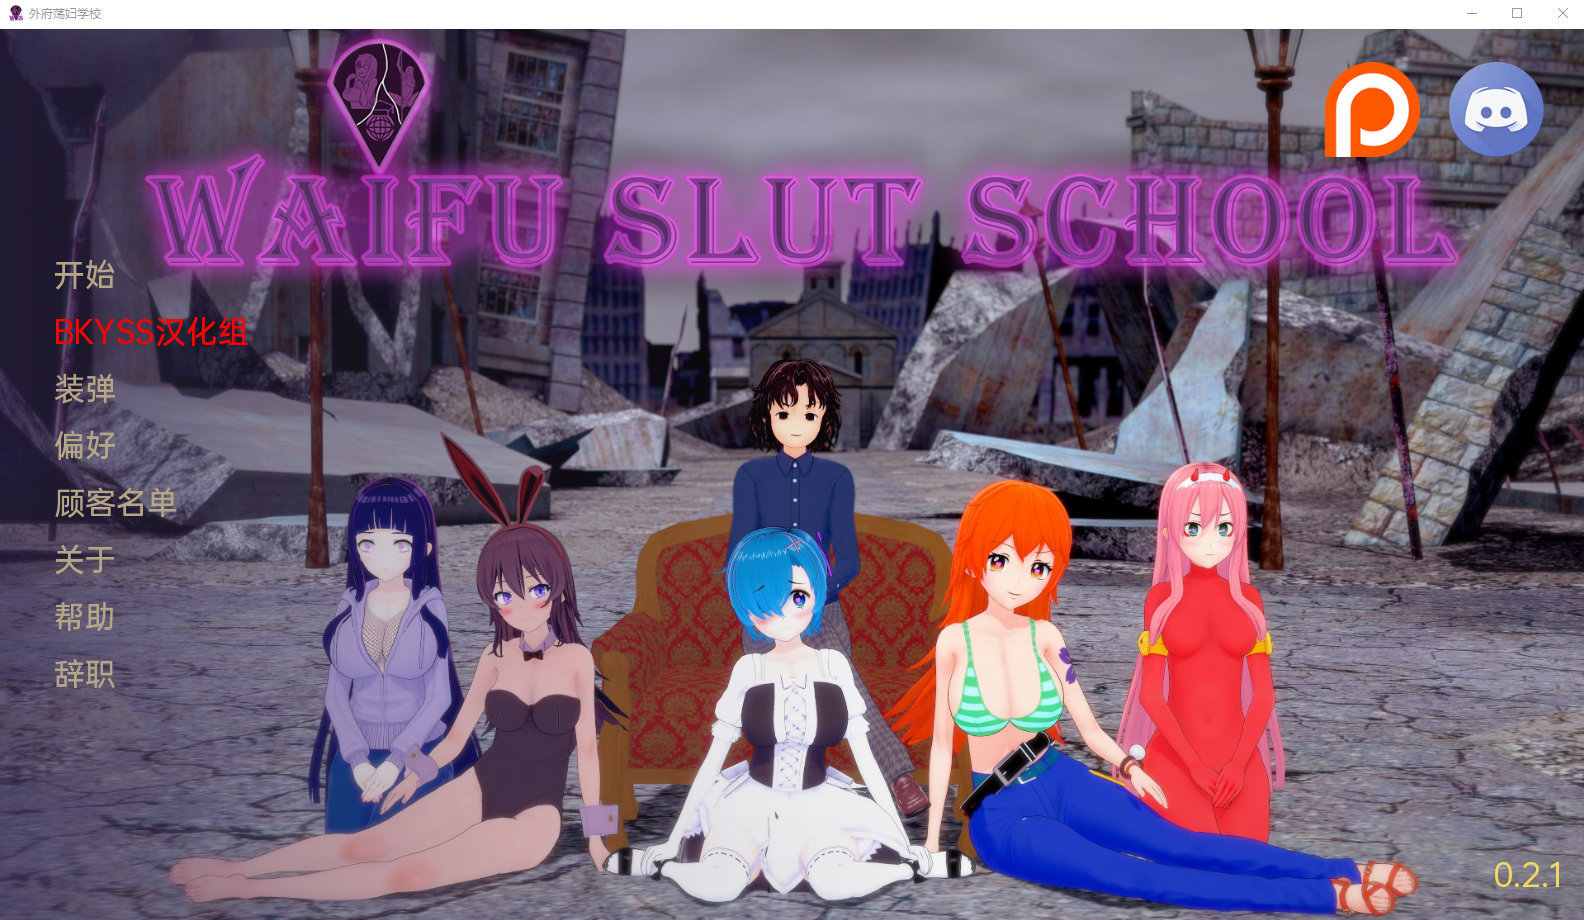 [沙盒SLG汉化动态] 外福可爱学校 Waifu Slut School v0.2.1 PC+安卓汉化版 [多空/3.8G/百度]